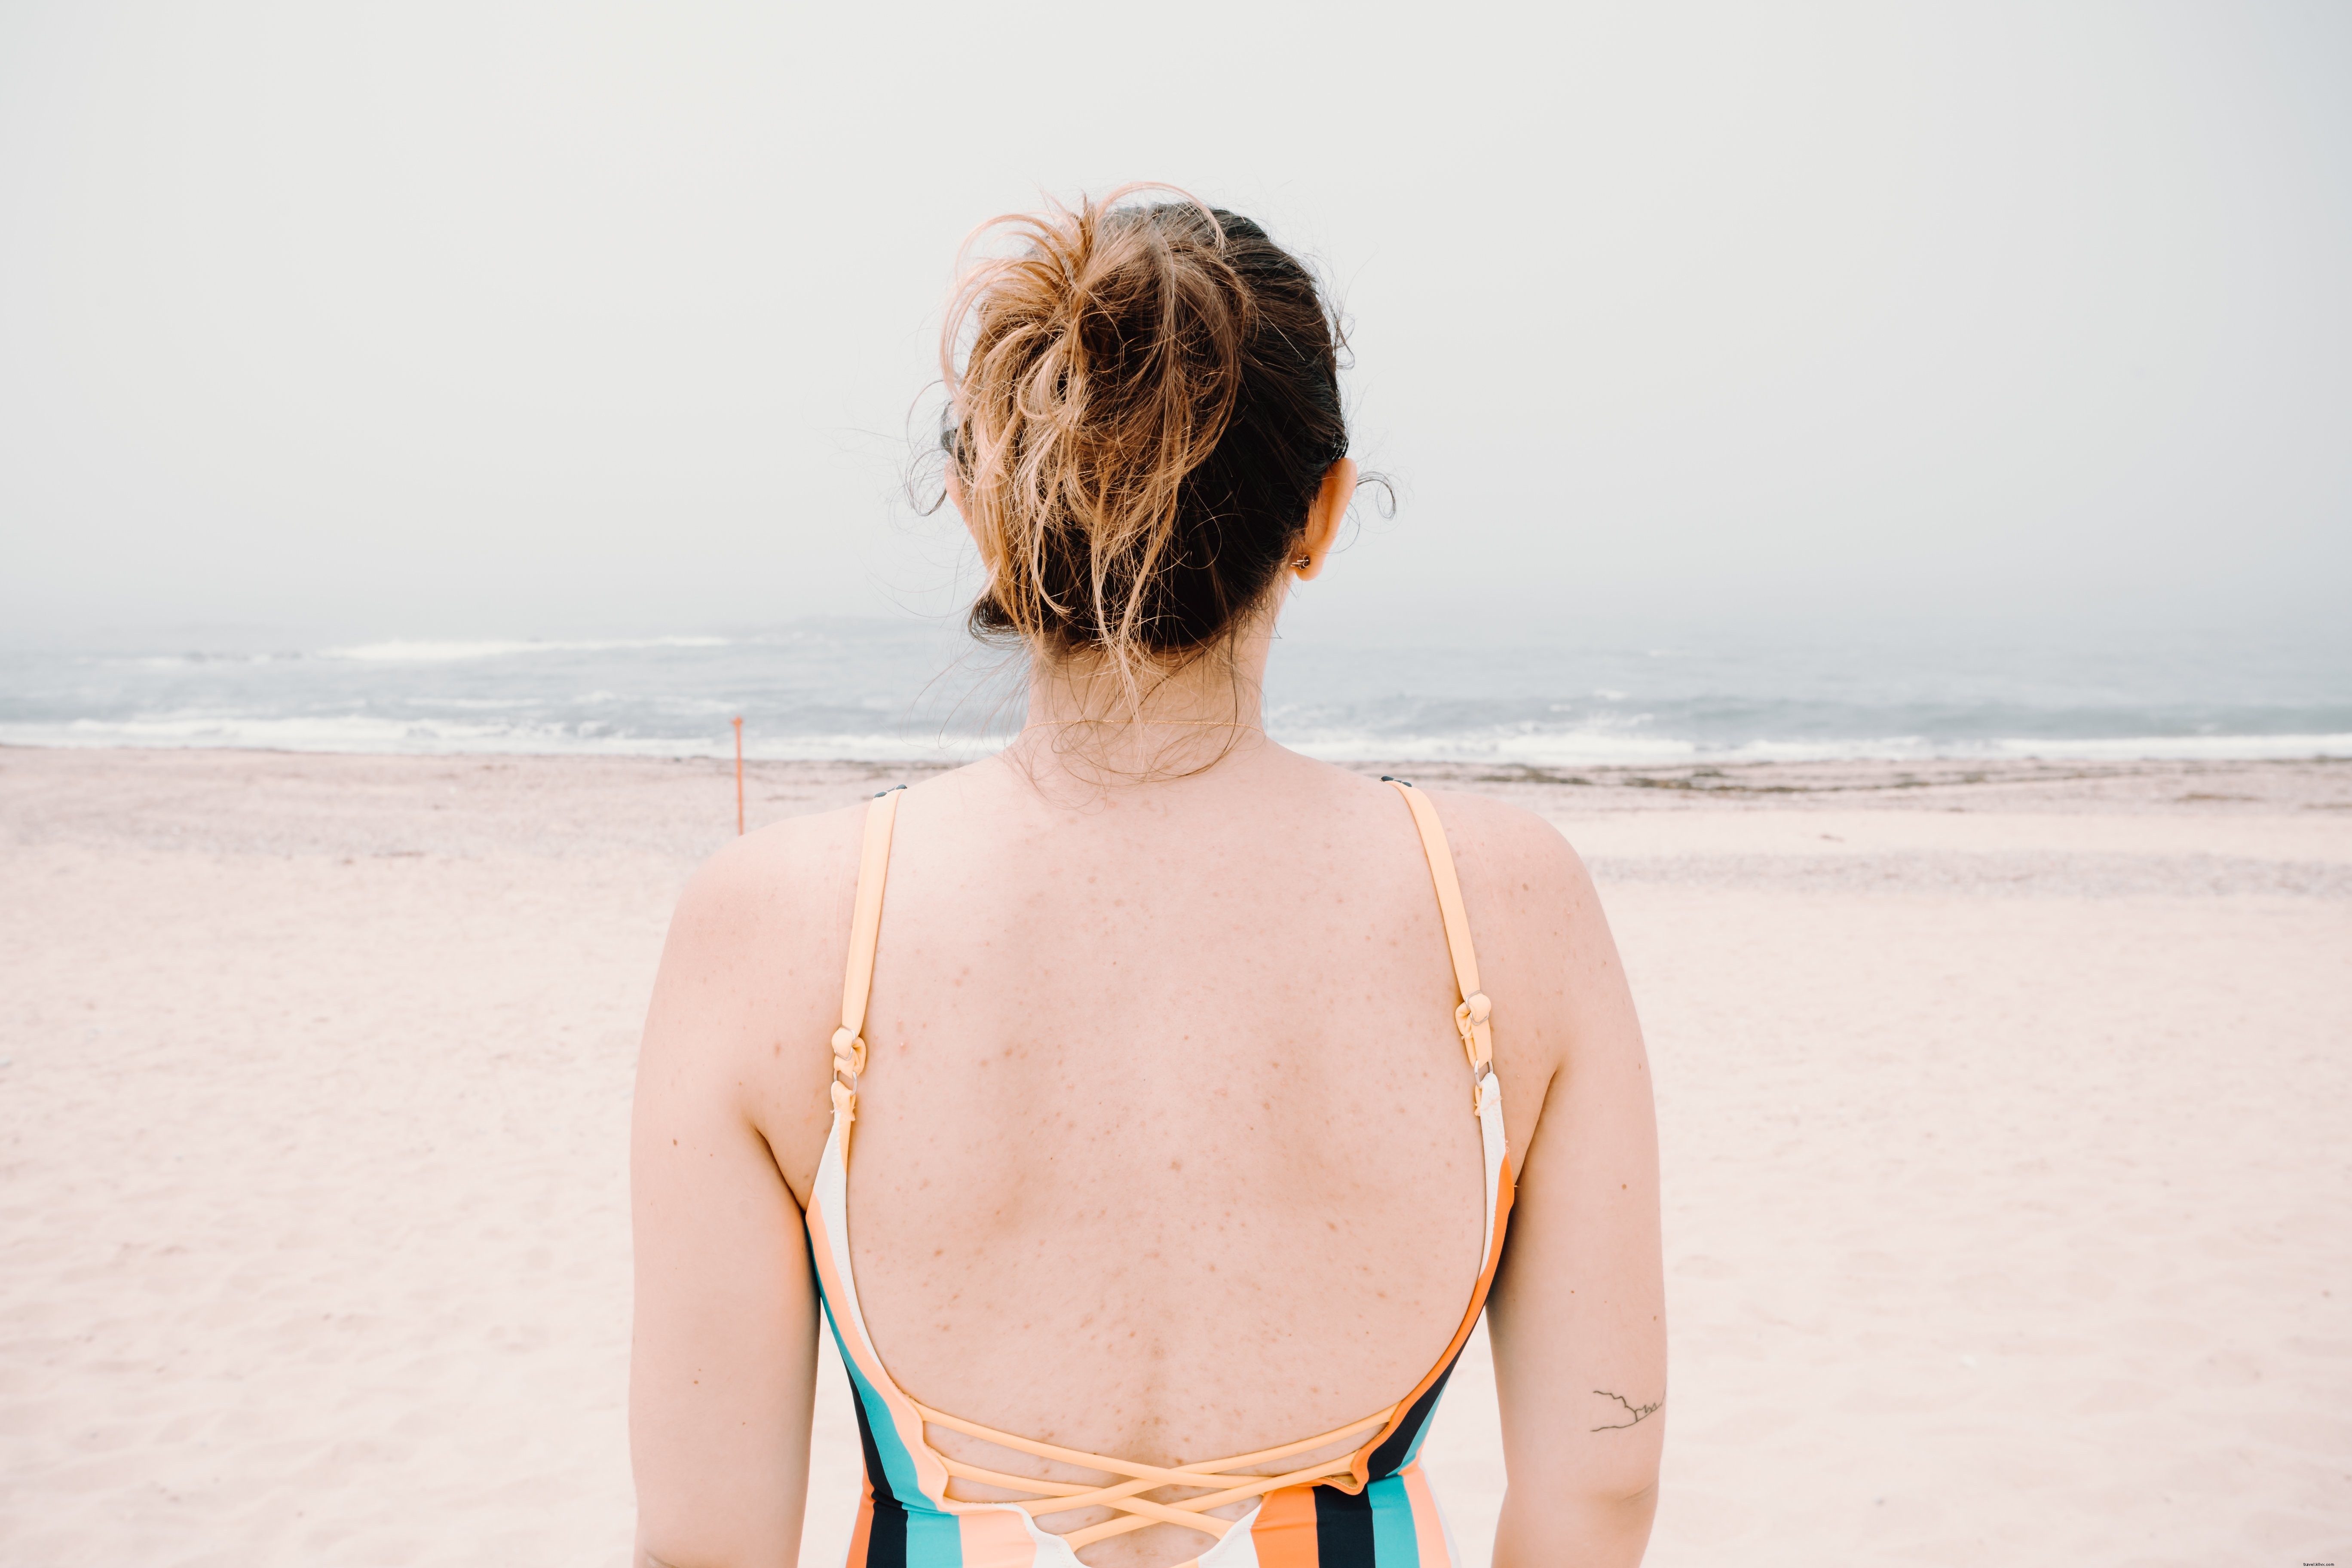 Persona di fronte all acqua ondulata su una spiaggia sabbiosa foto 